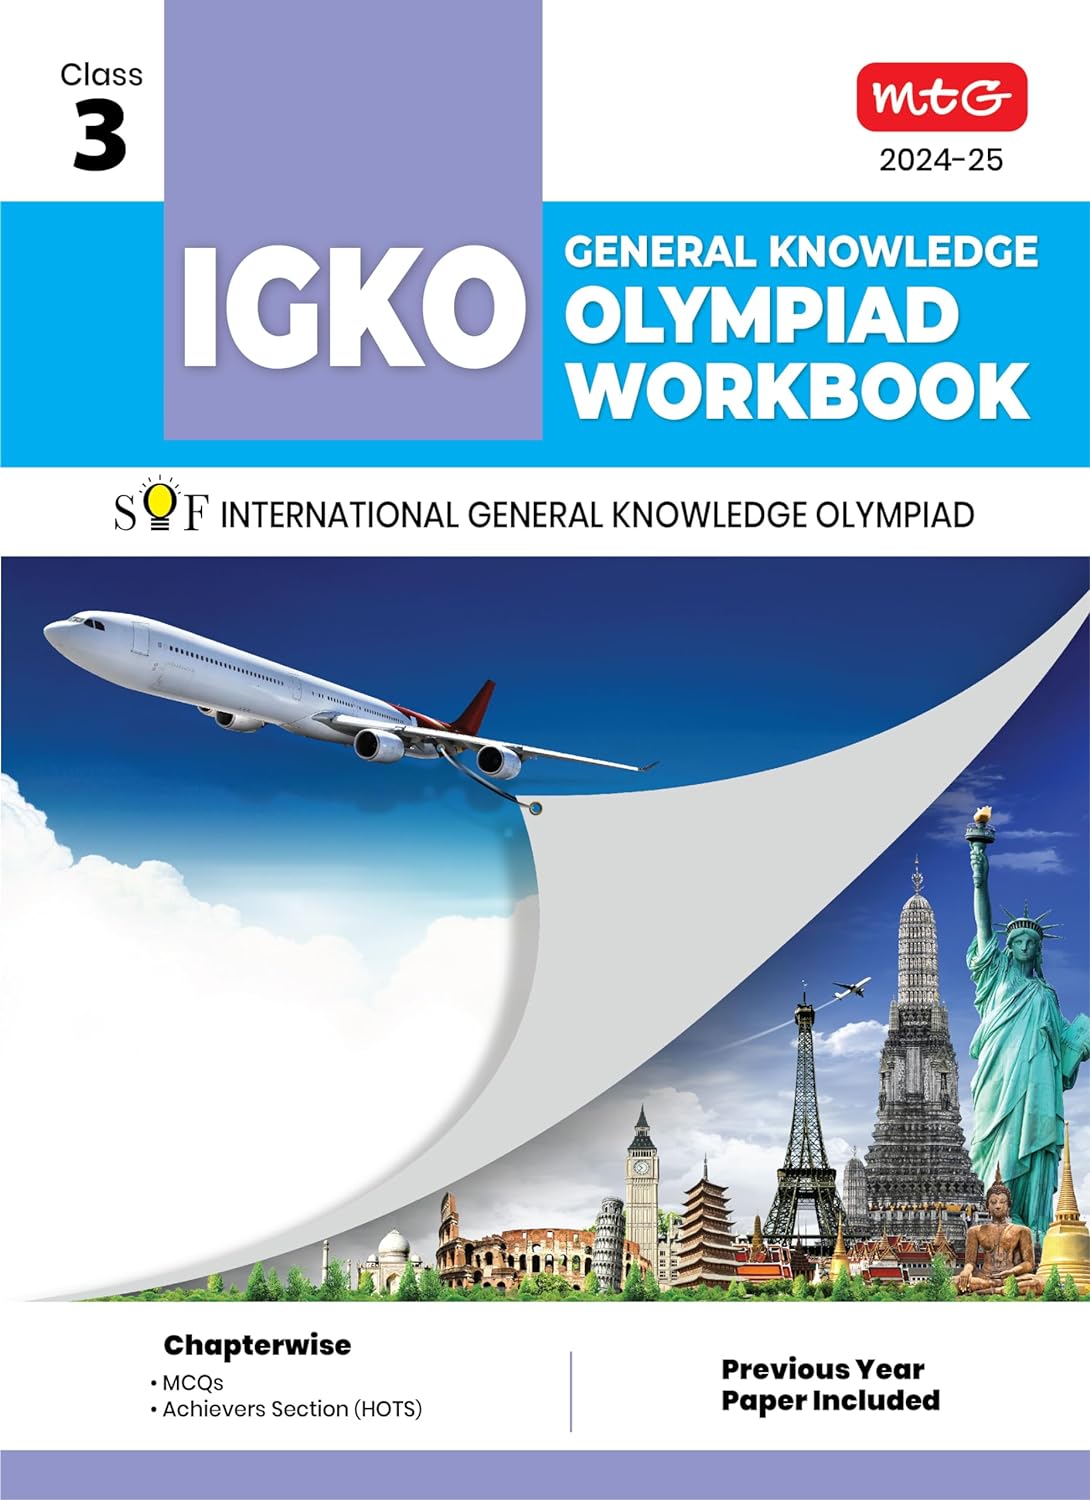 MTG GENERAL KNOWLEDGE OLYMPIAD WORKBOOK IGKO 3